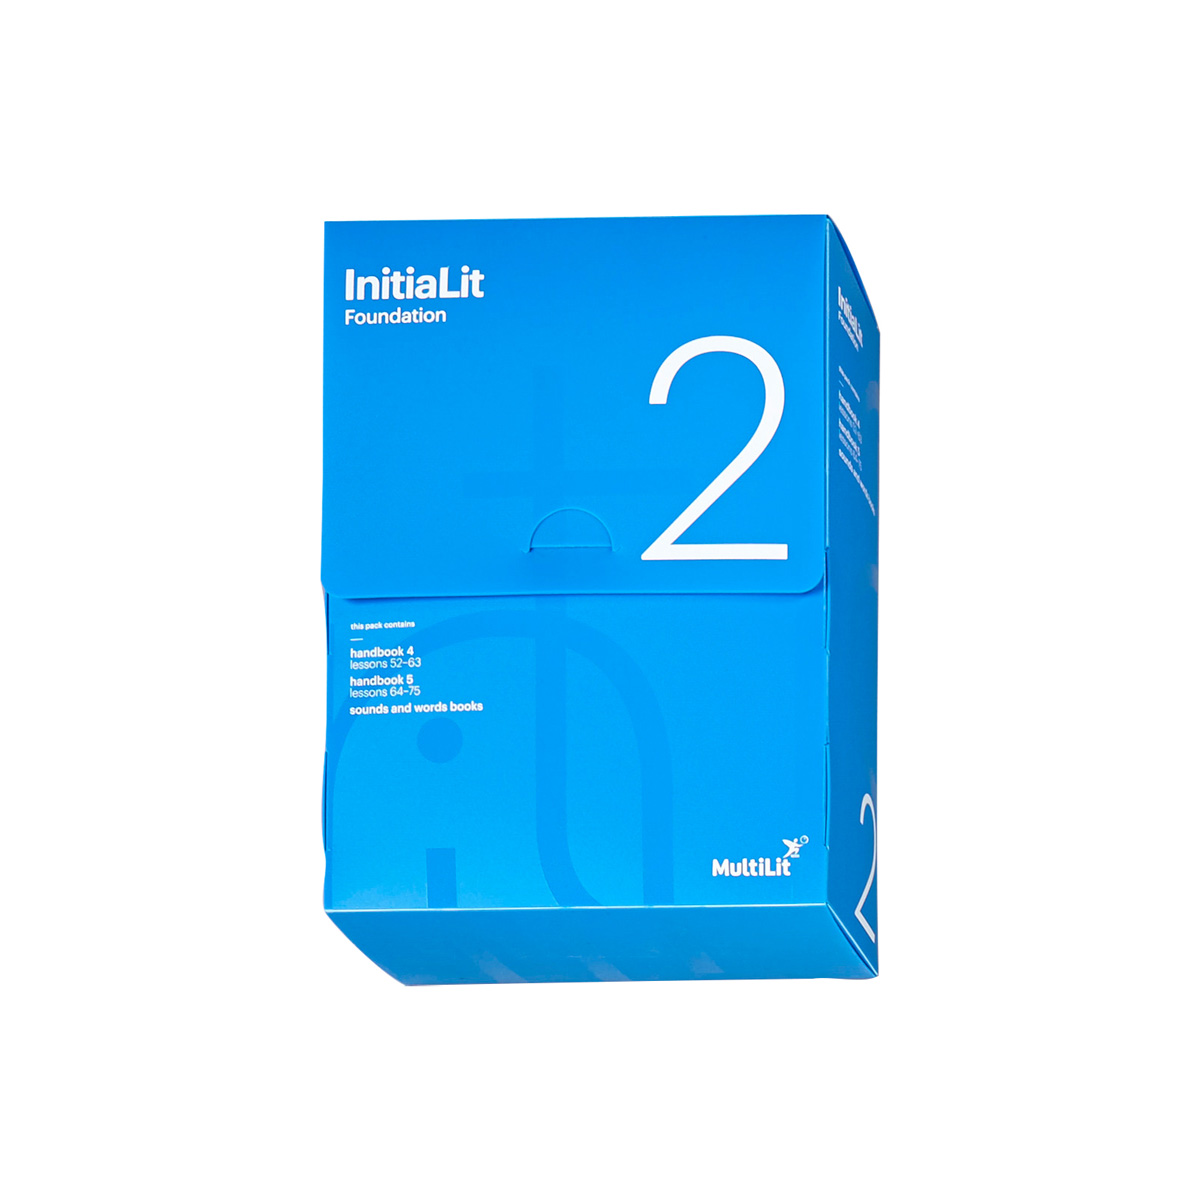 InitiaLit–Foundation Storage Box 2 - MultiLit